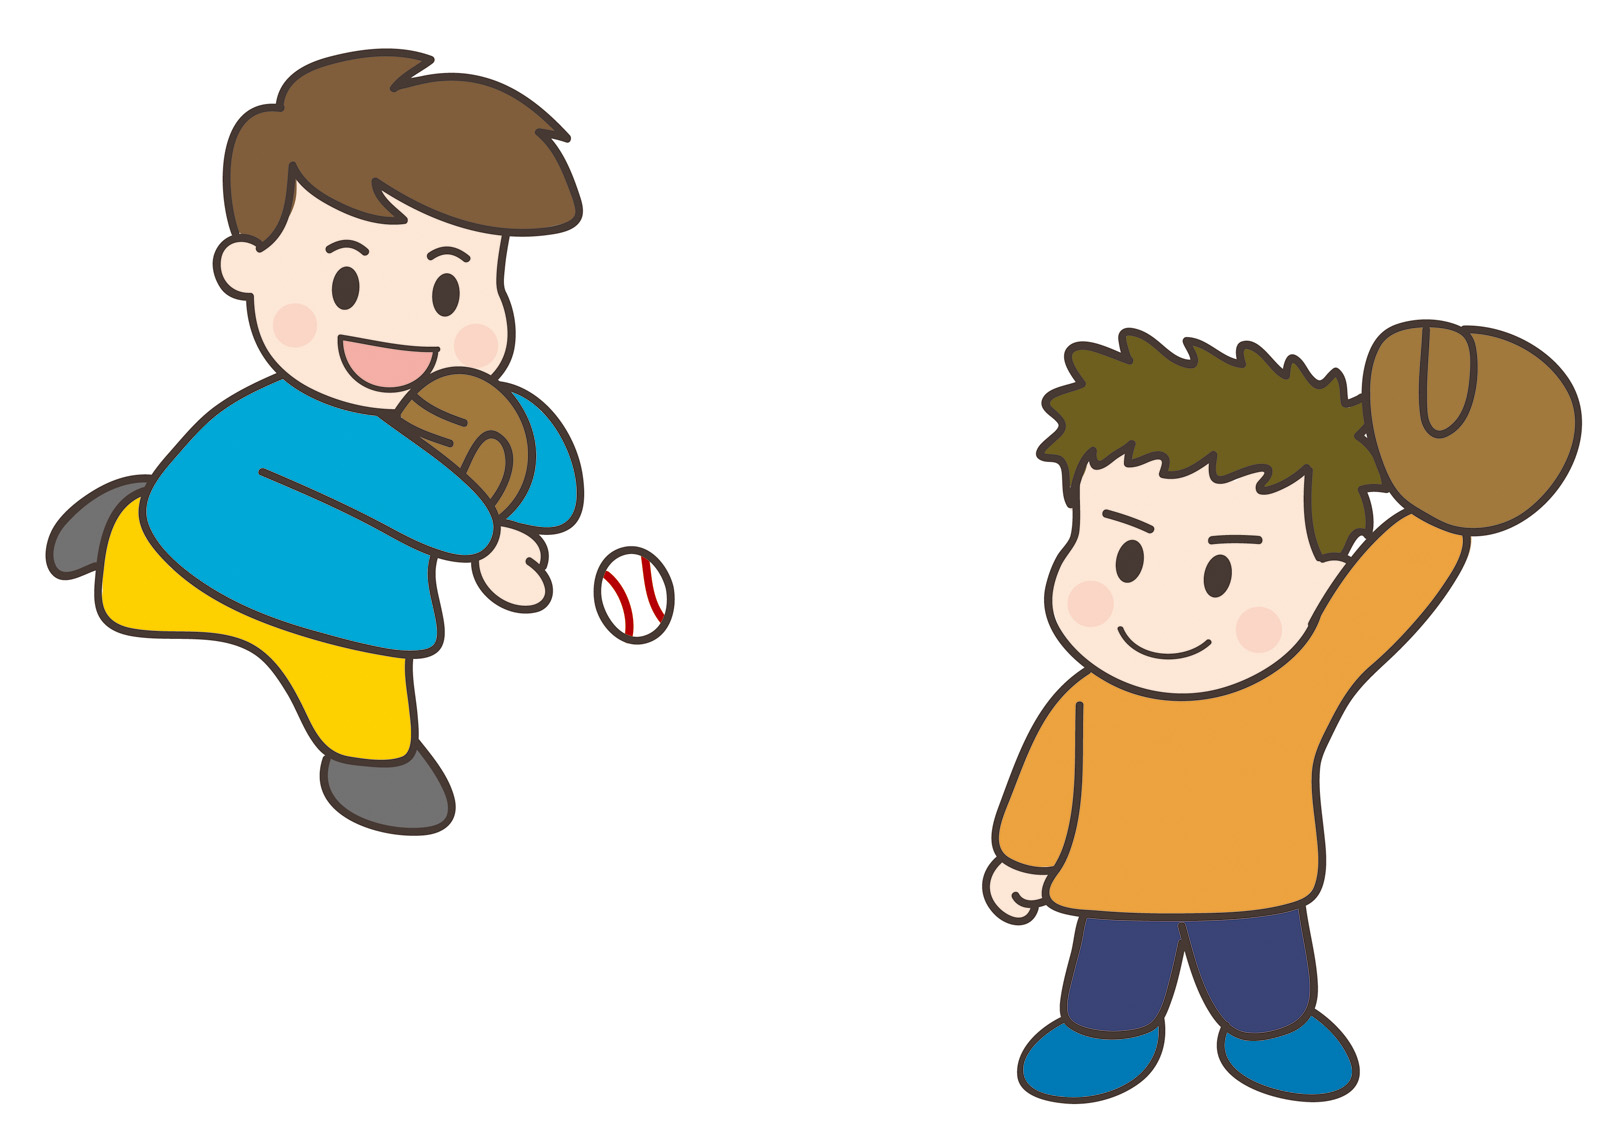 【2月9日】ボール遊びやピッチング遊びを通してボールと親しもう！イオンモール草津にて「キッズスポーツ・野球あそび」開催☆参加無料♪